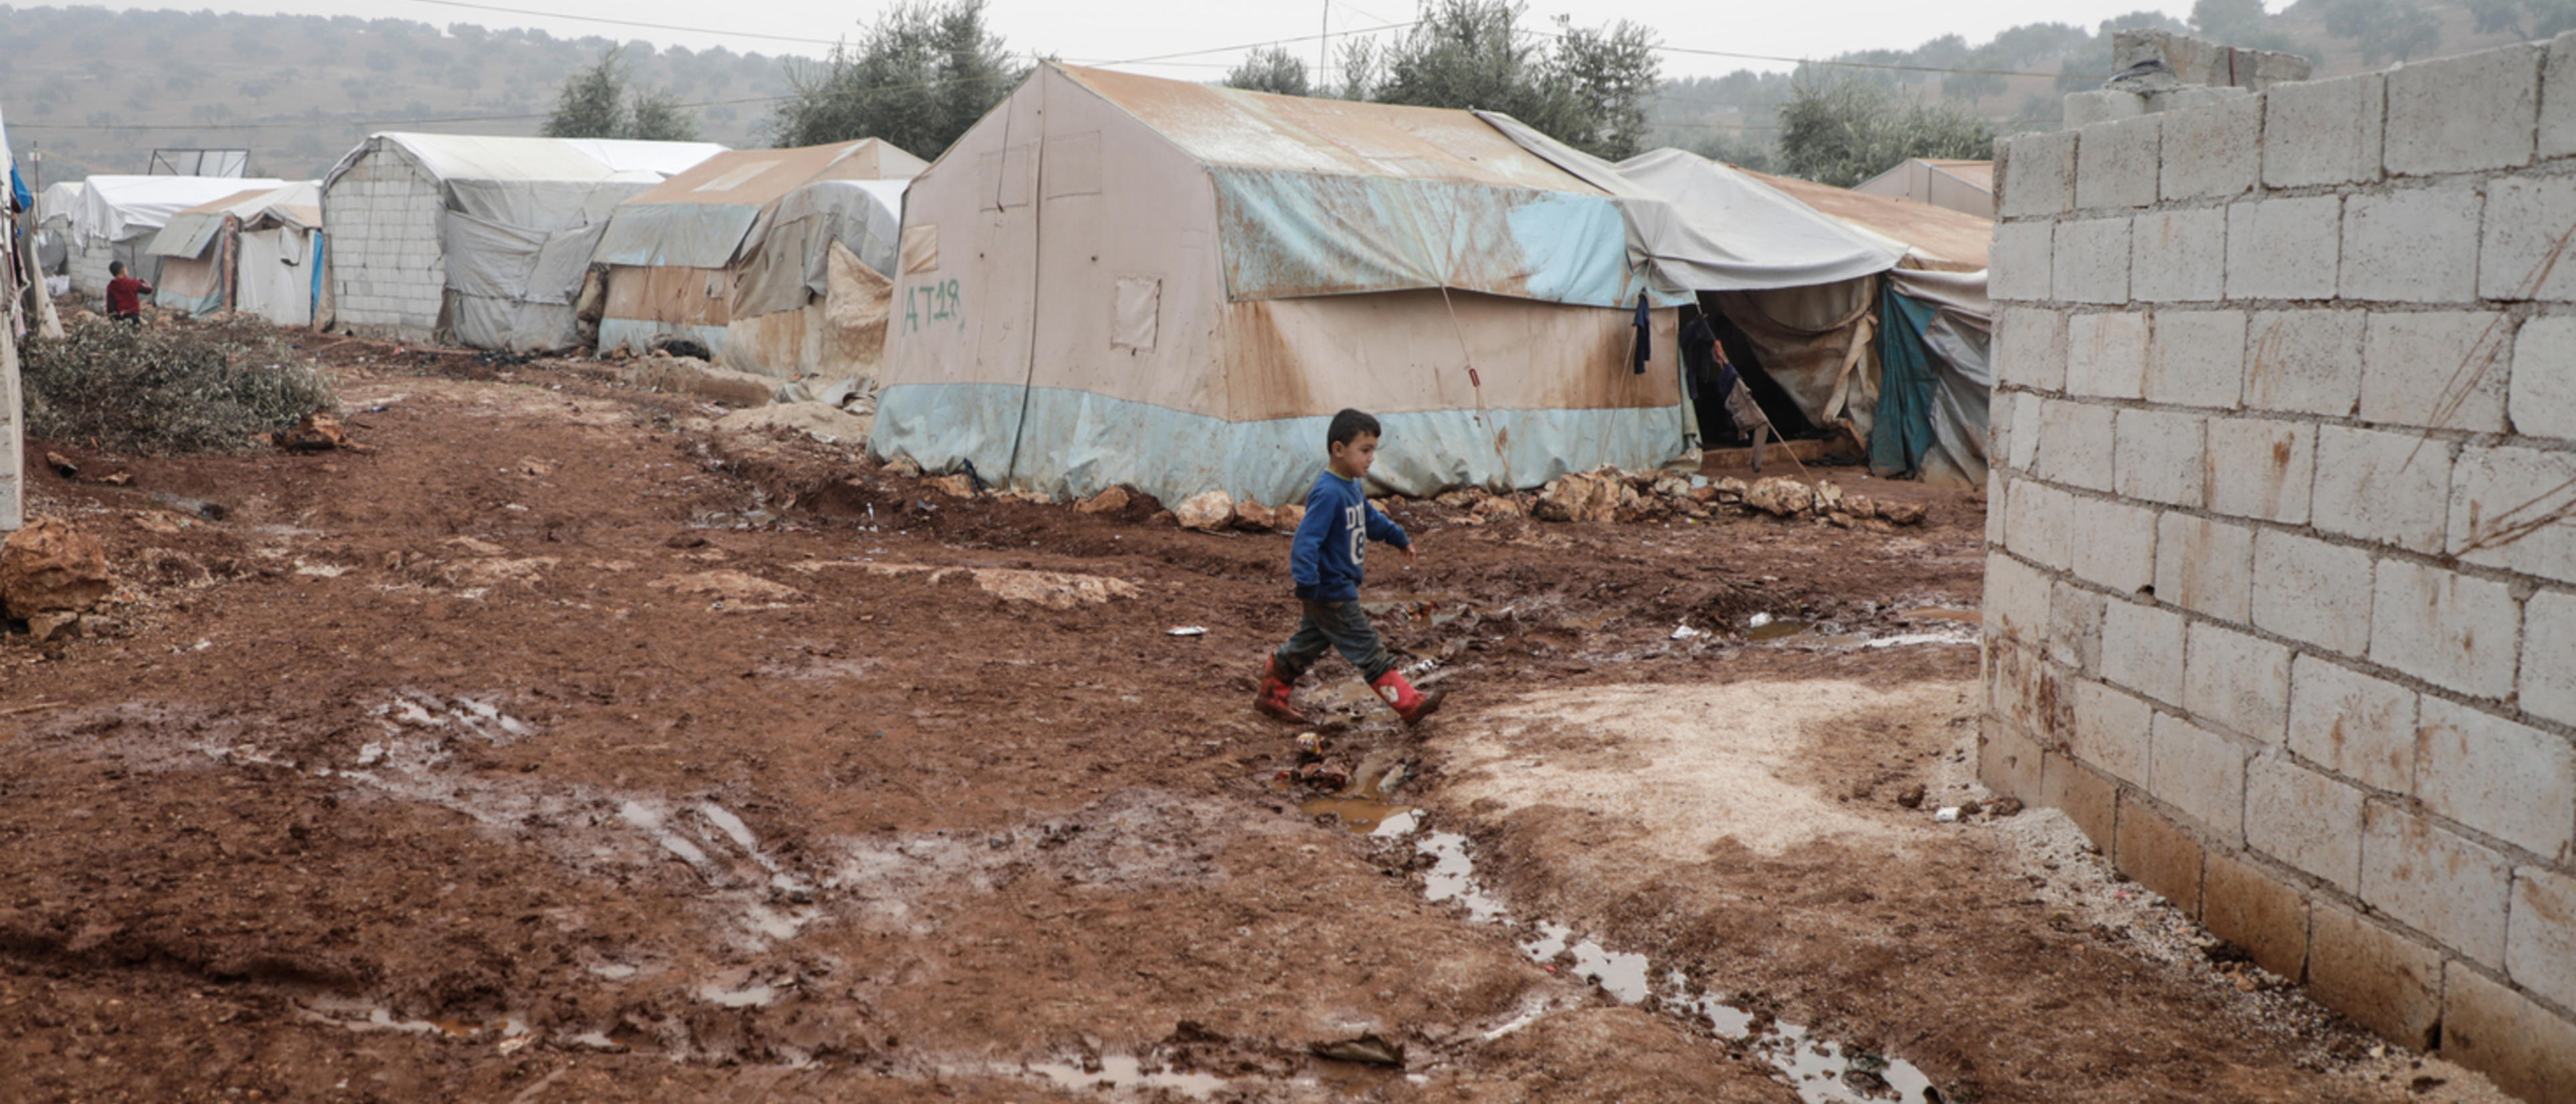 Pojke går genom ett läger i Syrien